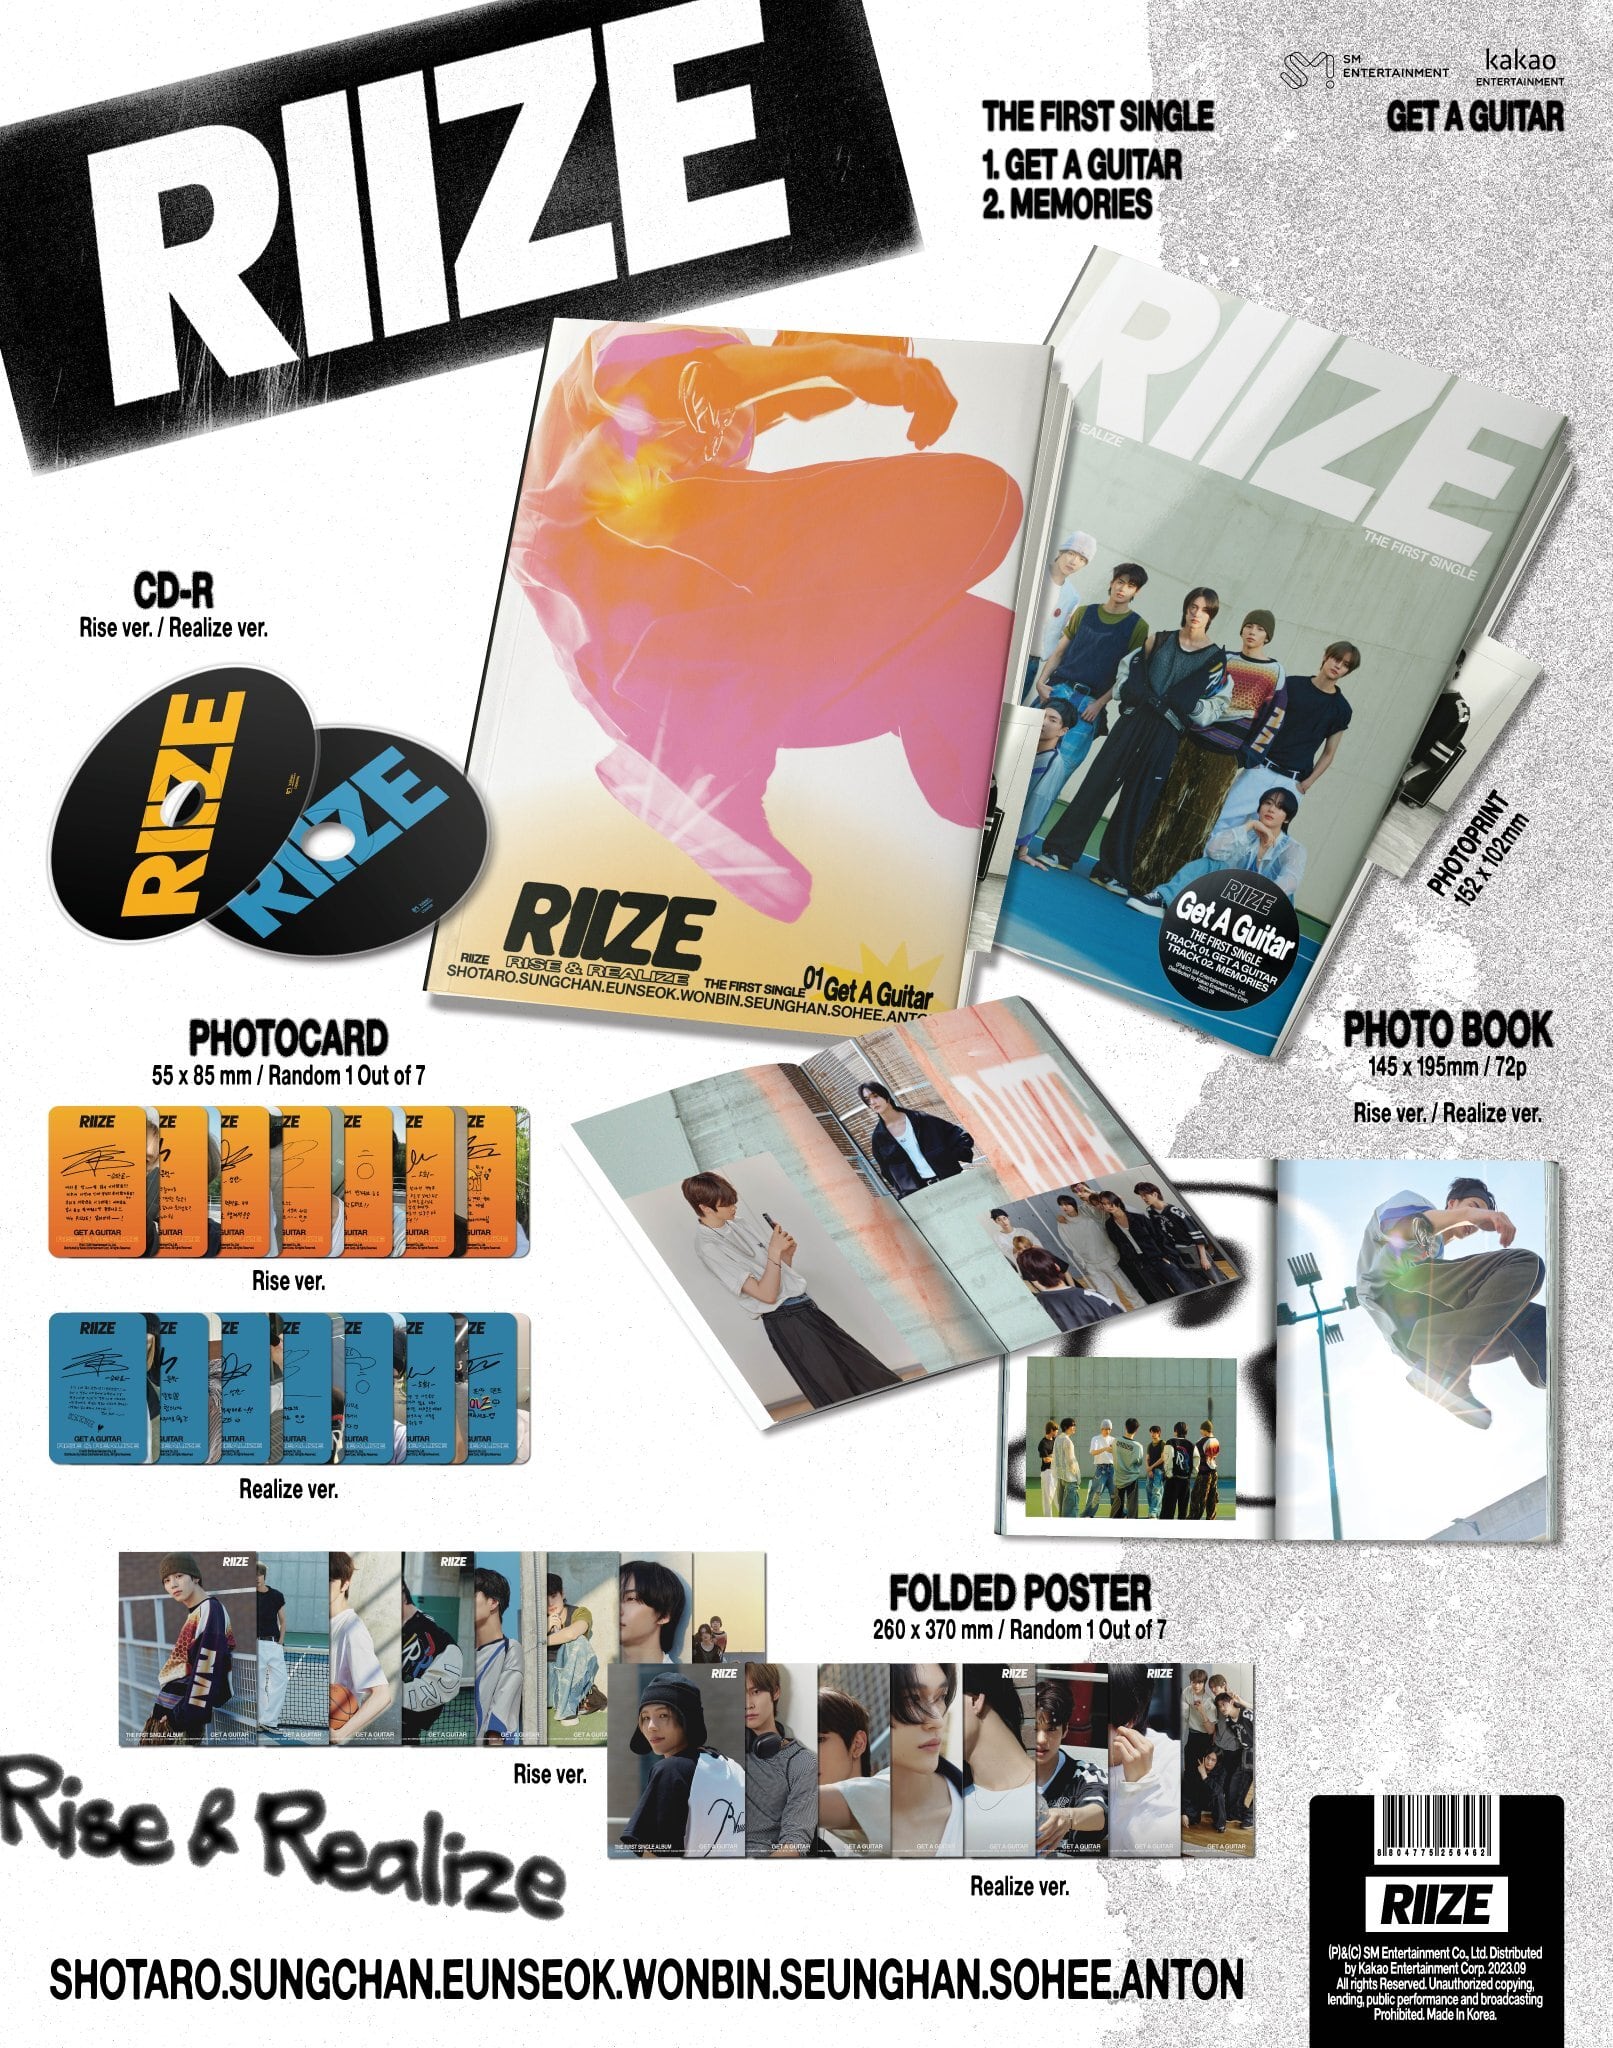 withmuu特典付き】RIIZE - The 1st Single Album [Get A Guitar] 注文